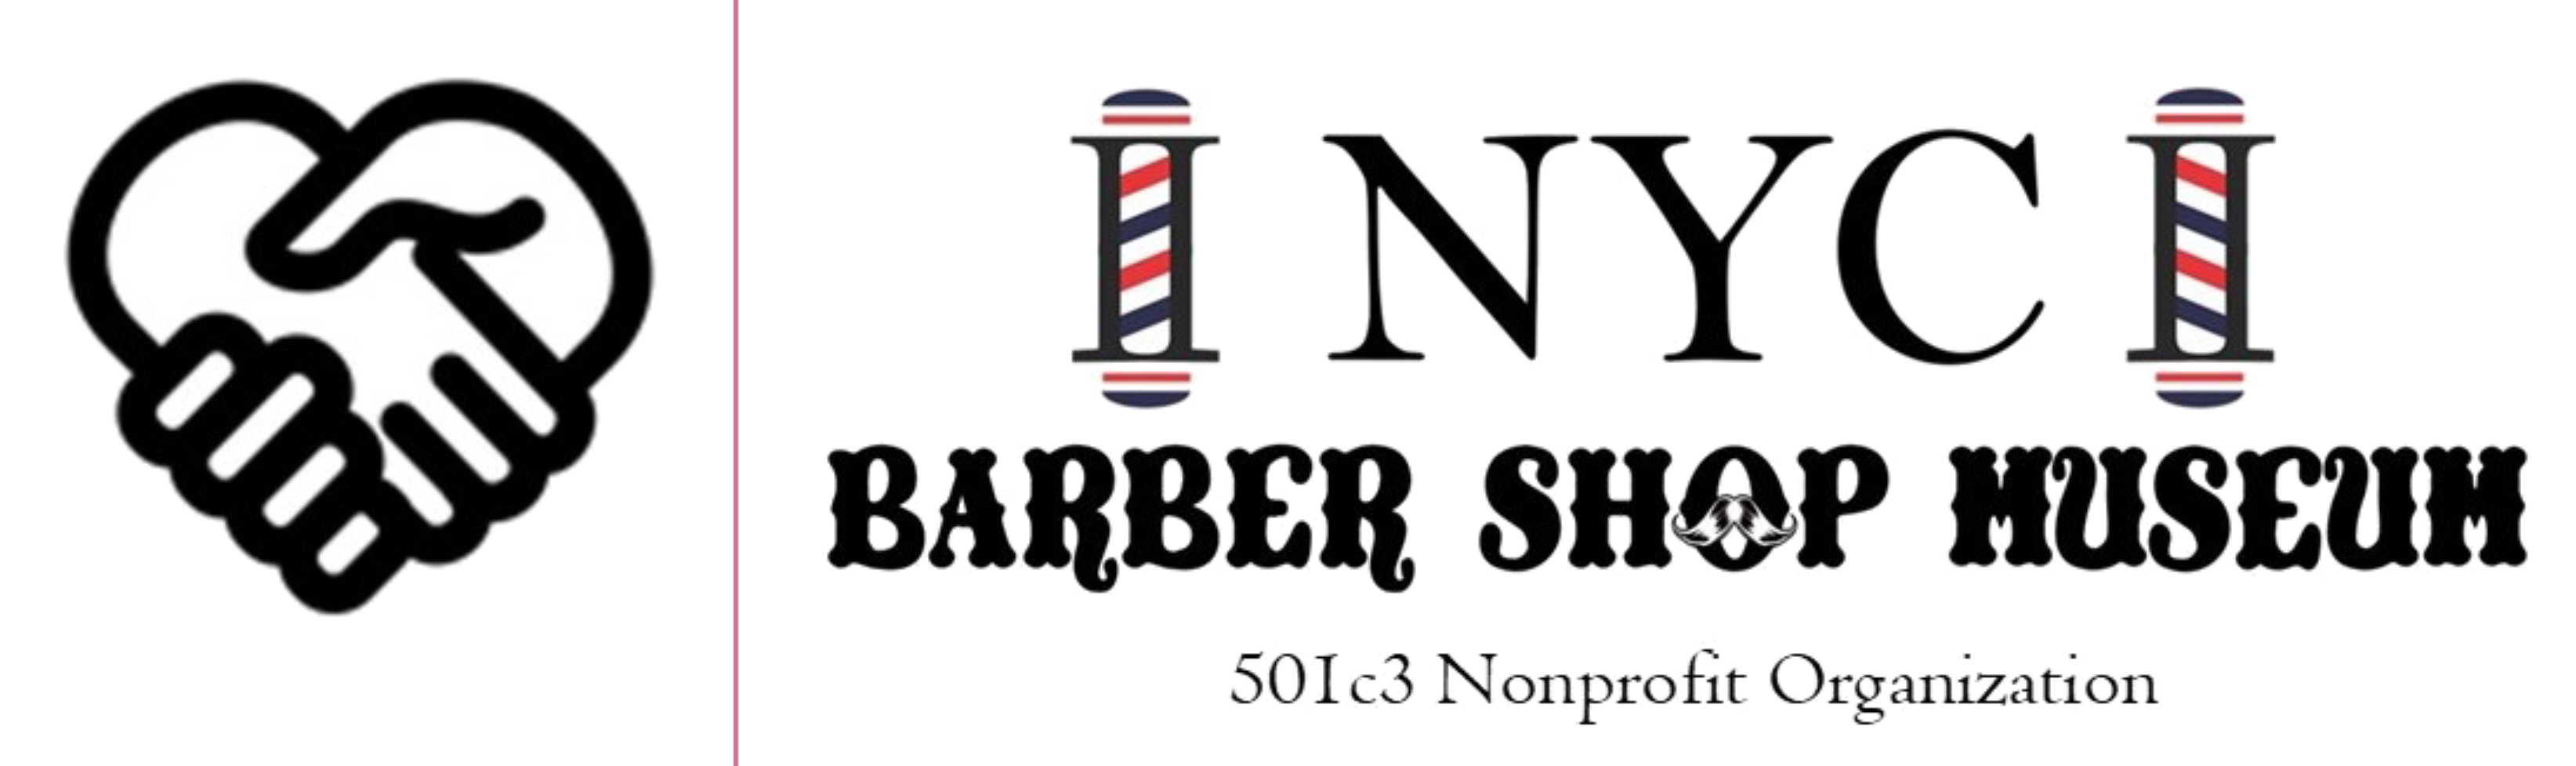 Johnstown Barber Shop- Full service barber shop.